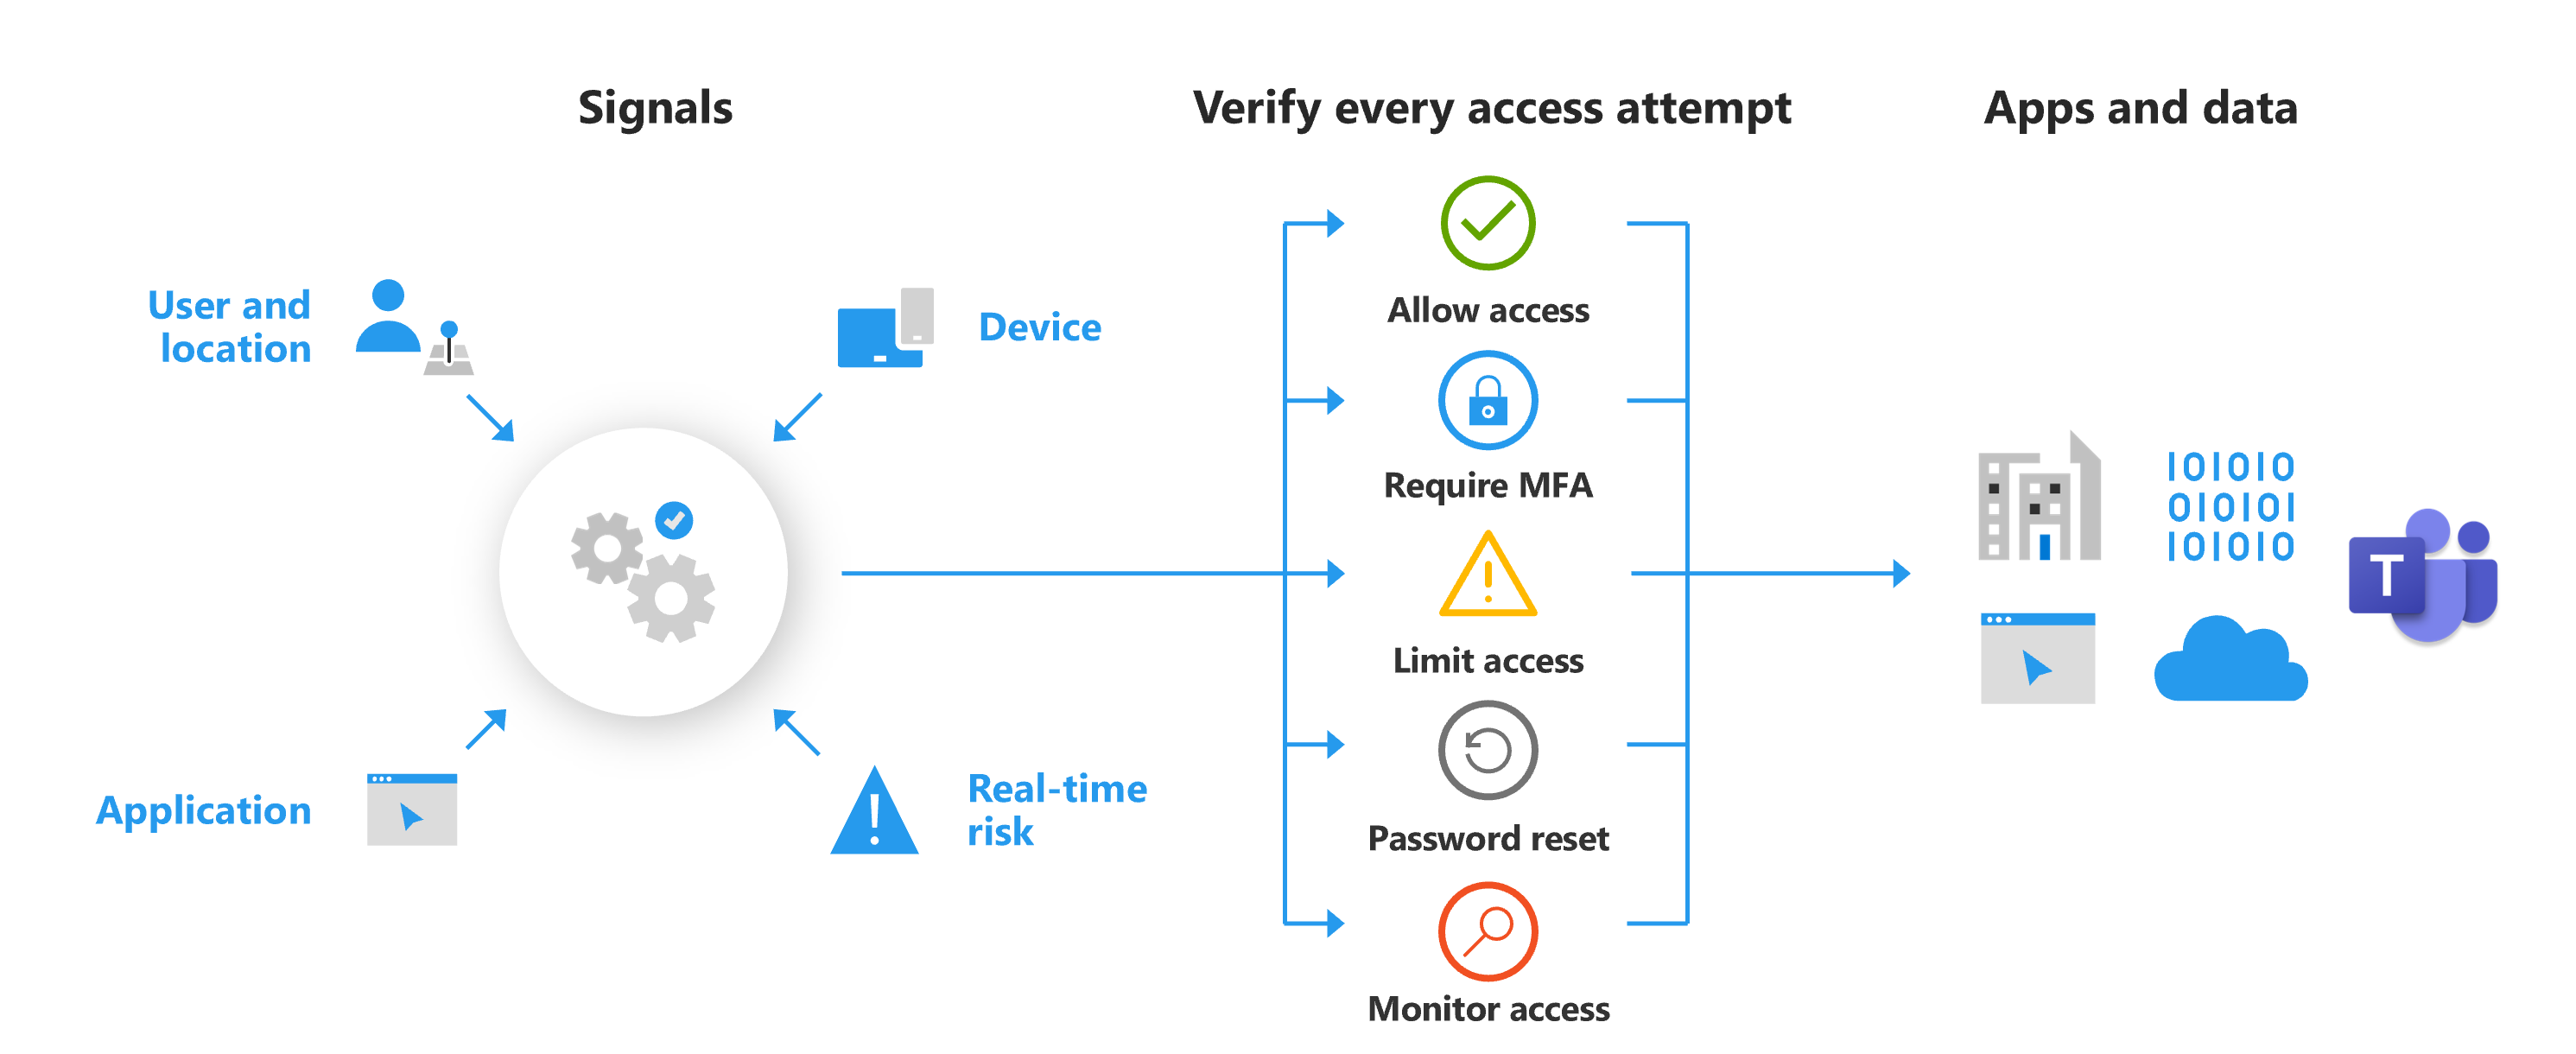 Diagrama que mostra os recursos da política de acesso condicional, incluindo permitir acesso, exigir M F A, limitar acesso, redefinir senha e monitorar acesso